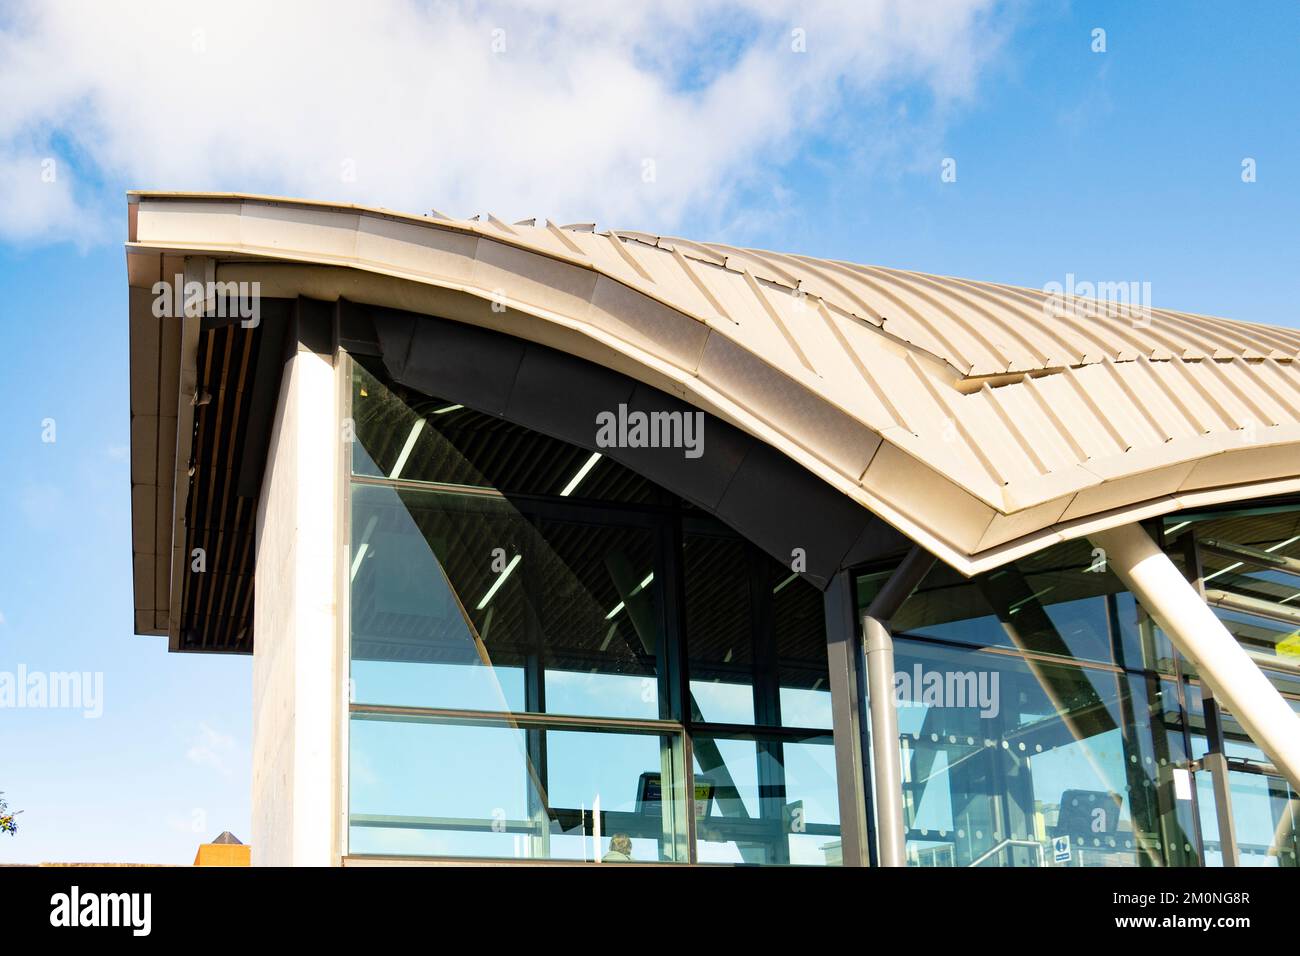 Hanley-Stoke-on-Trent, Staffordshire-Großbritannien April 21,2022 Nahaufnahme des Busbahnhofs Hanley mit seinem futuristischen Metall- und Glasdesign Stockfoto